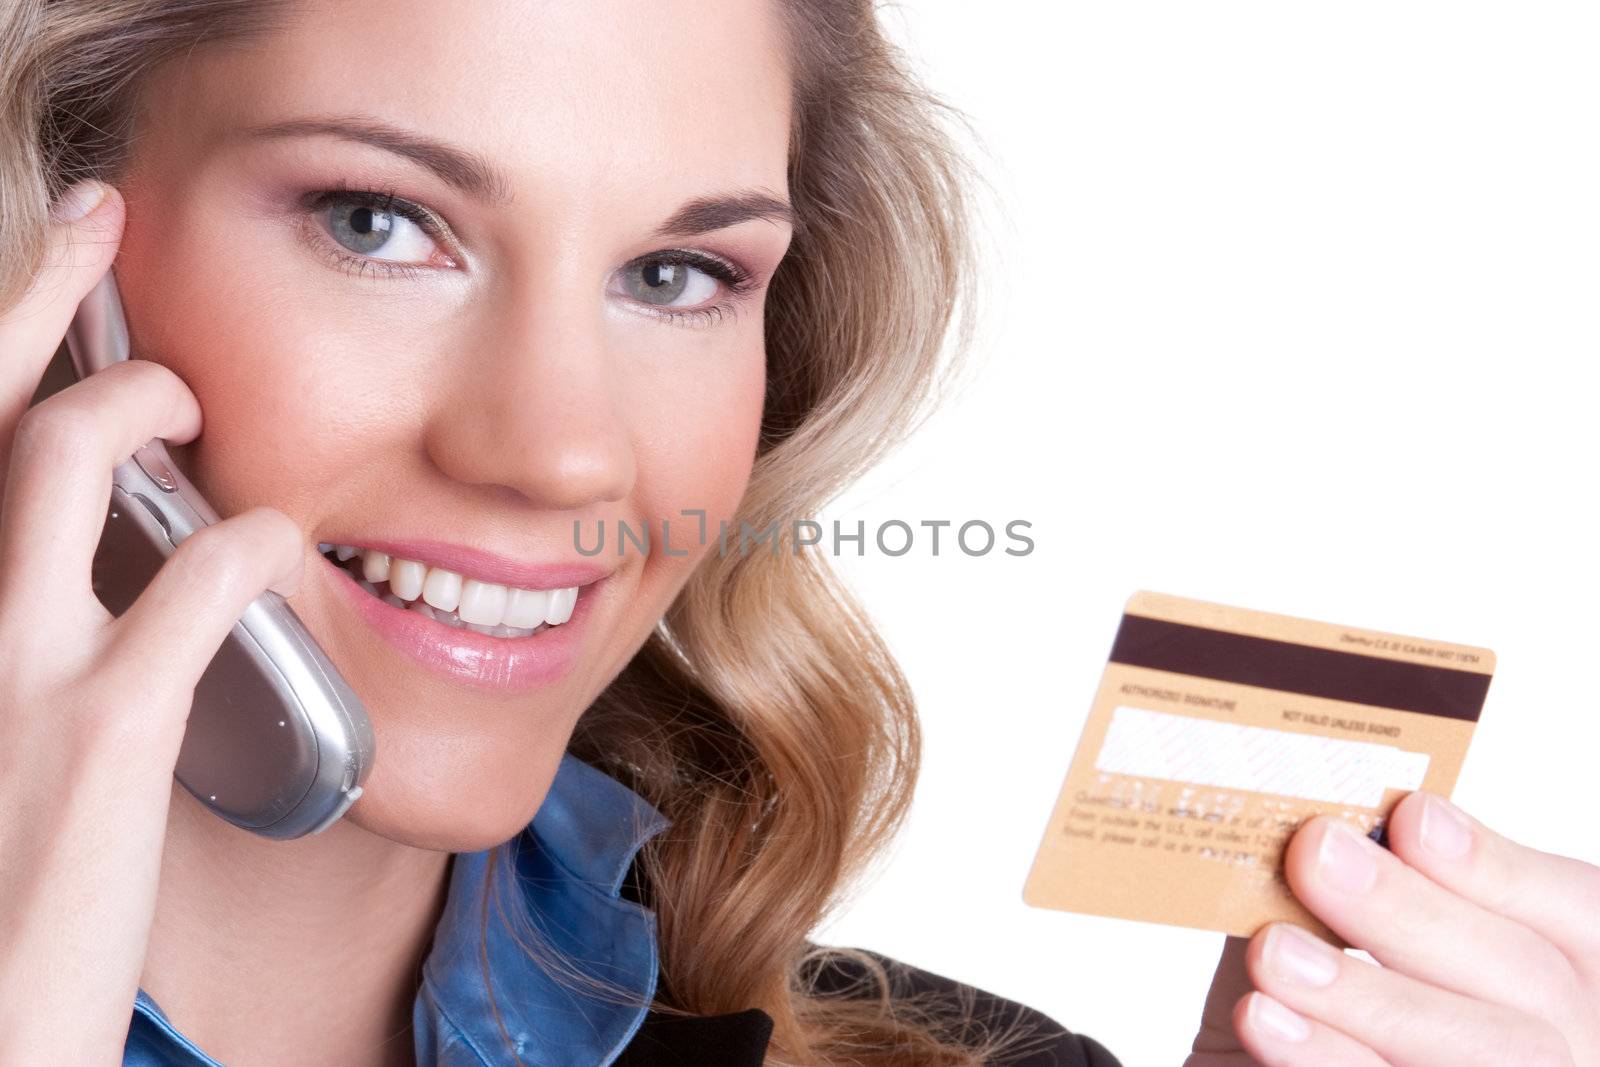 Credit Card Woman by keeweeboy